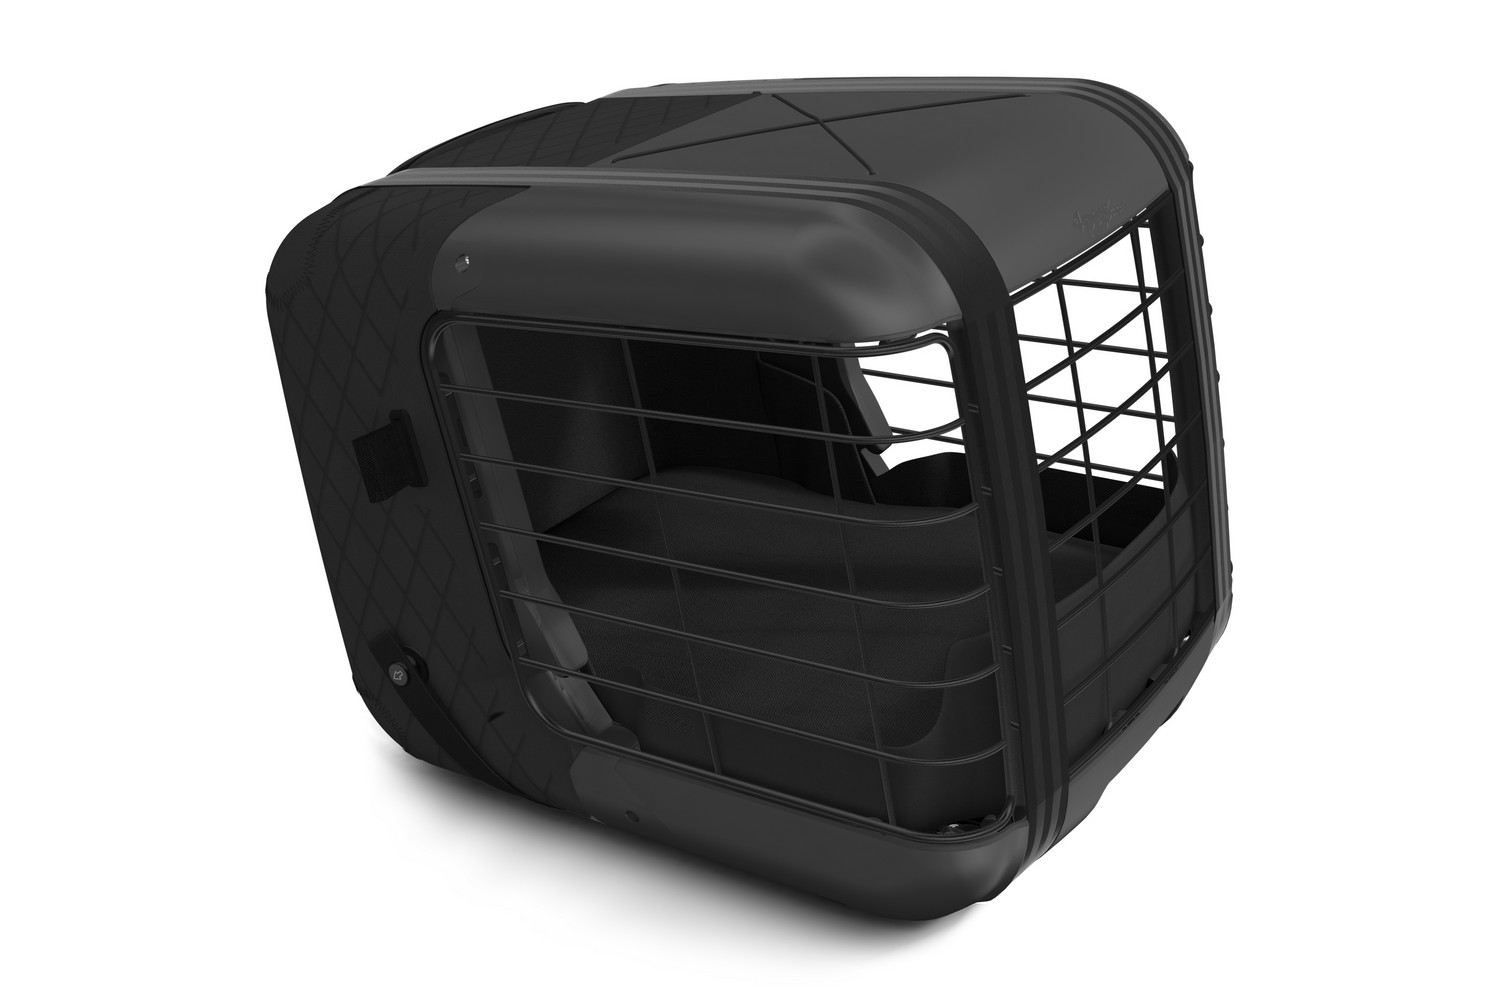 Transportbox voor hond of kat 4pets Caree - Black Series